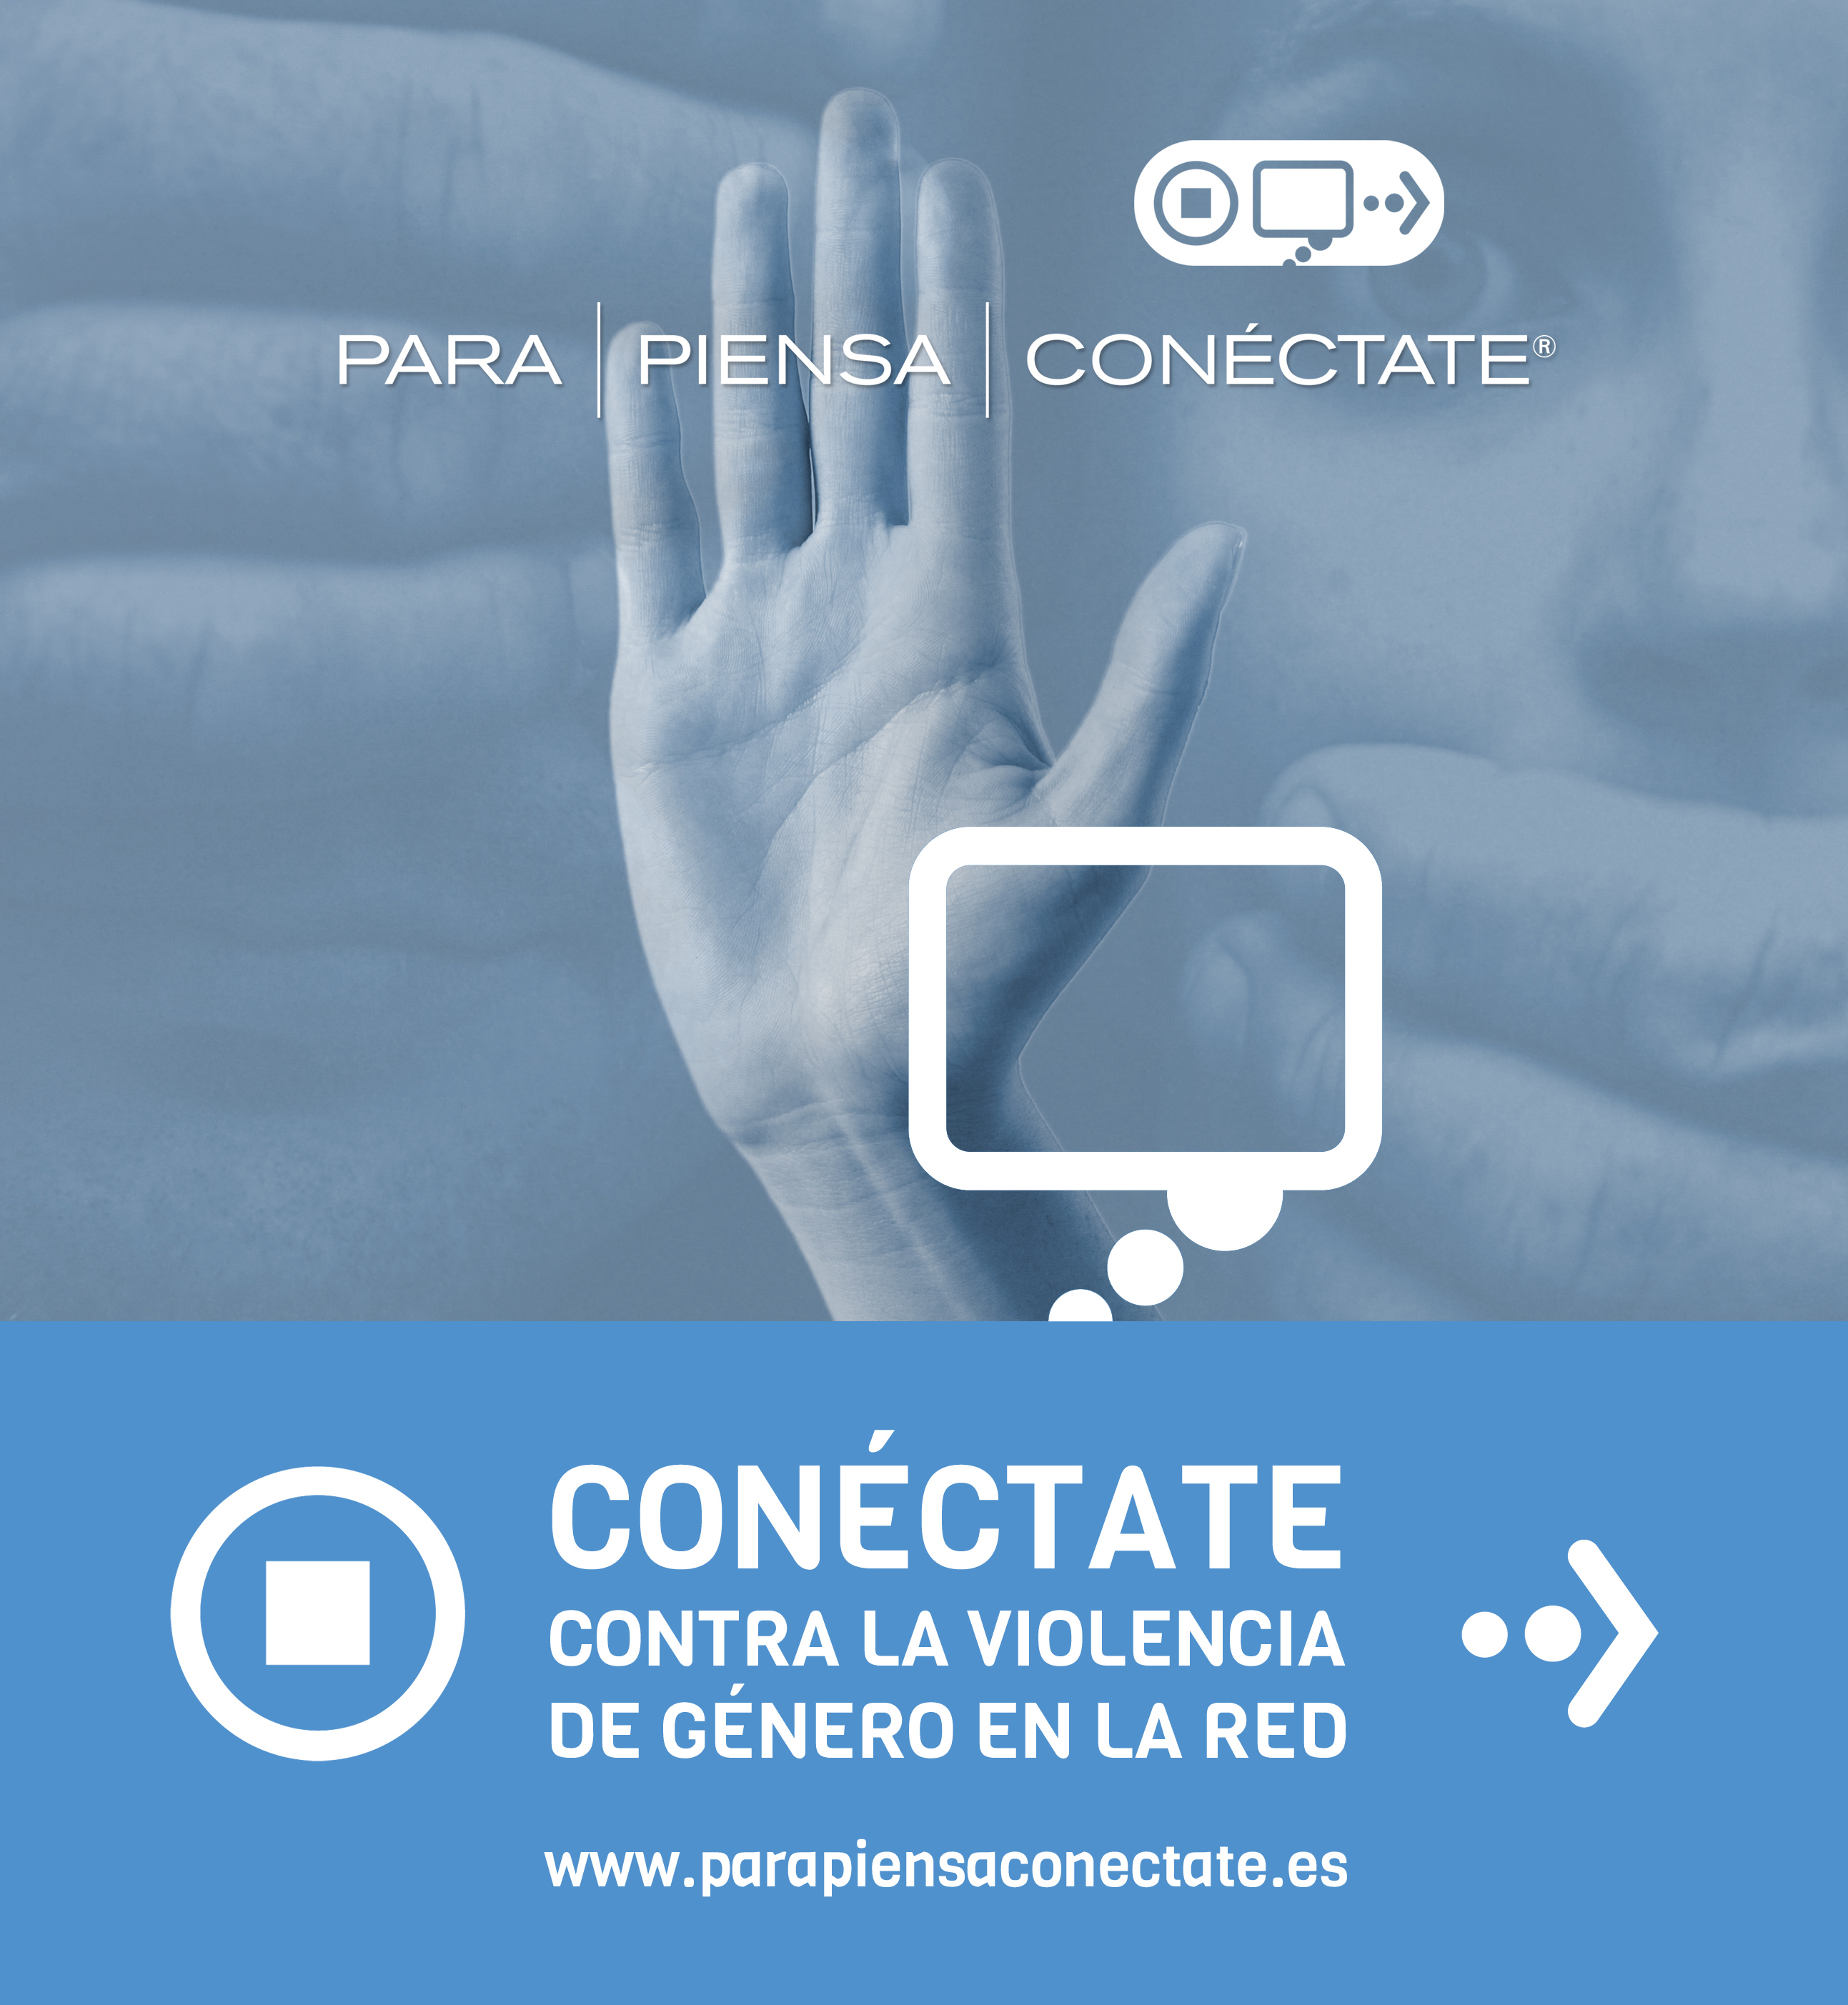  Cibervoluntarios imparte por primera vez el proyecto Para, piensa, conéctate en lengua de signos 